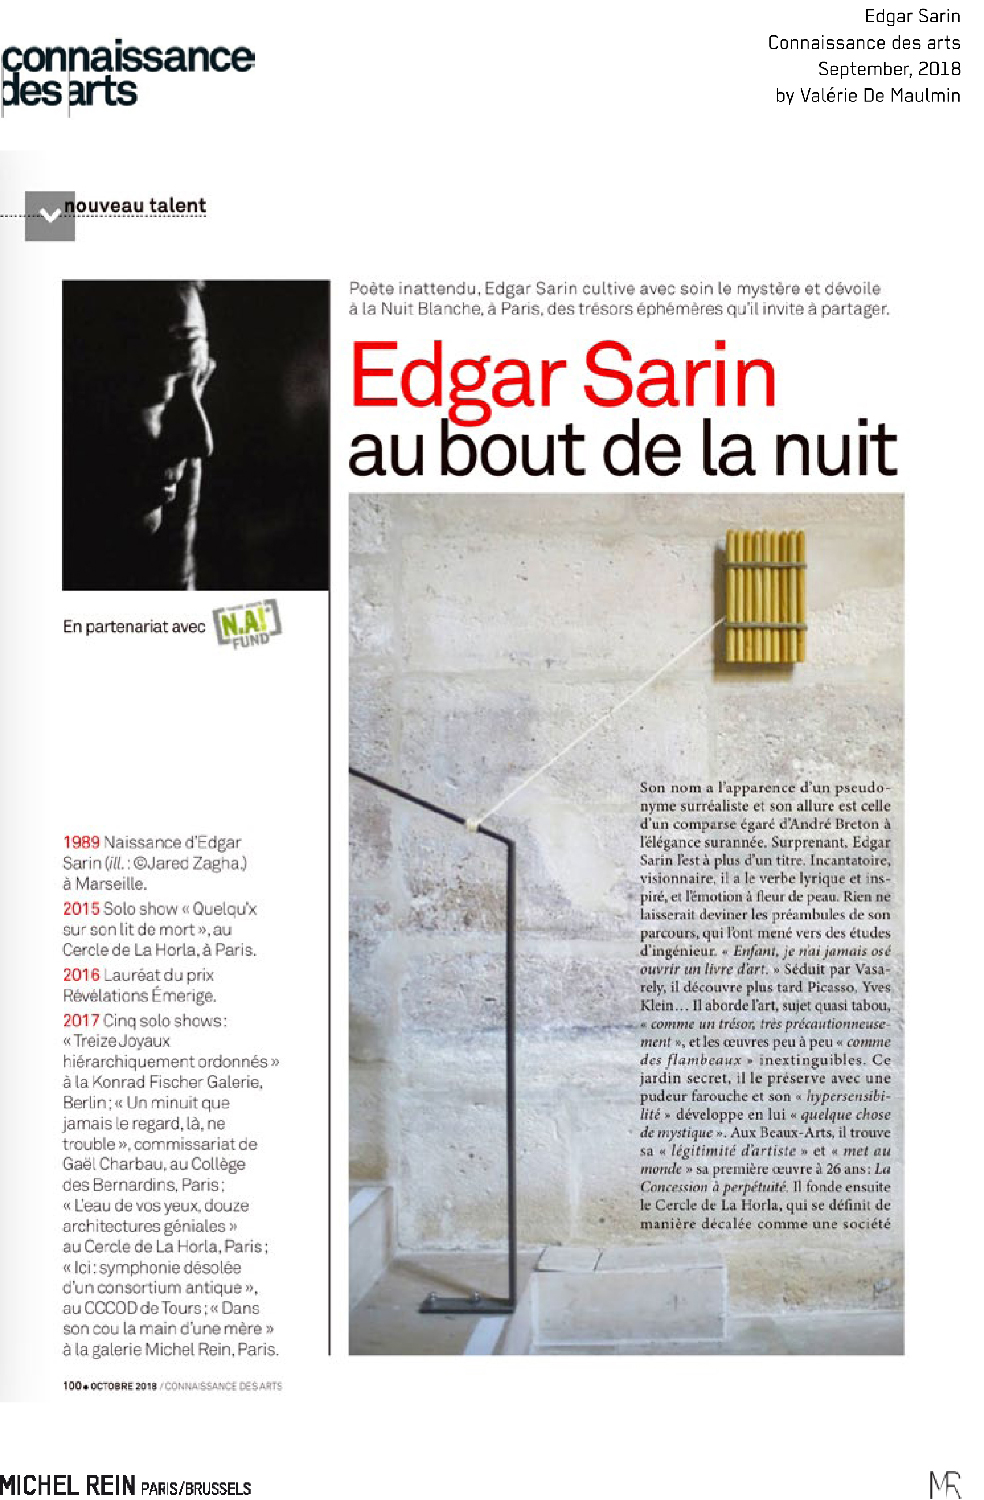 Edgar Sarin  - Connaissance des Arts